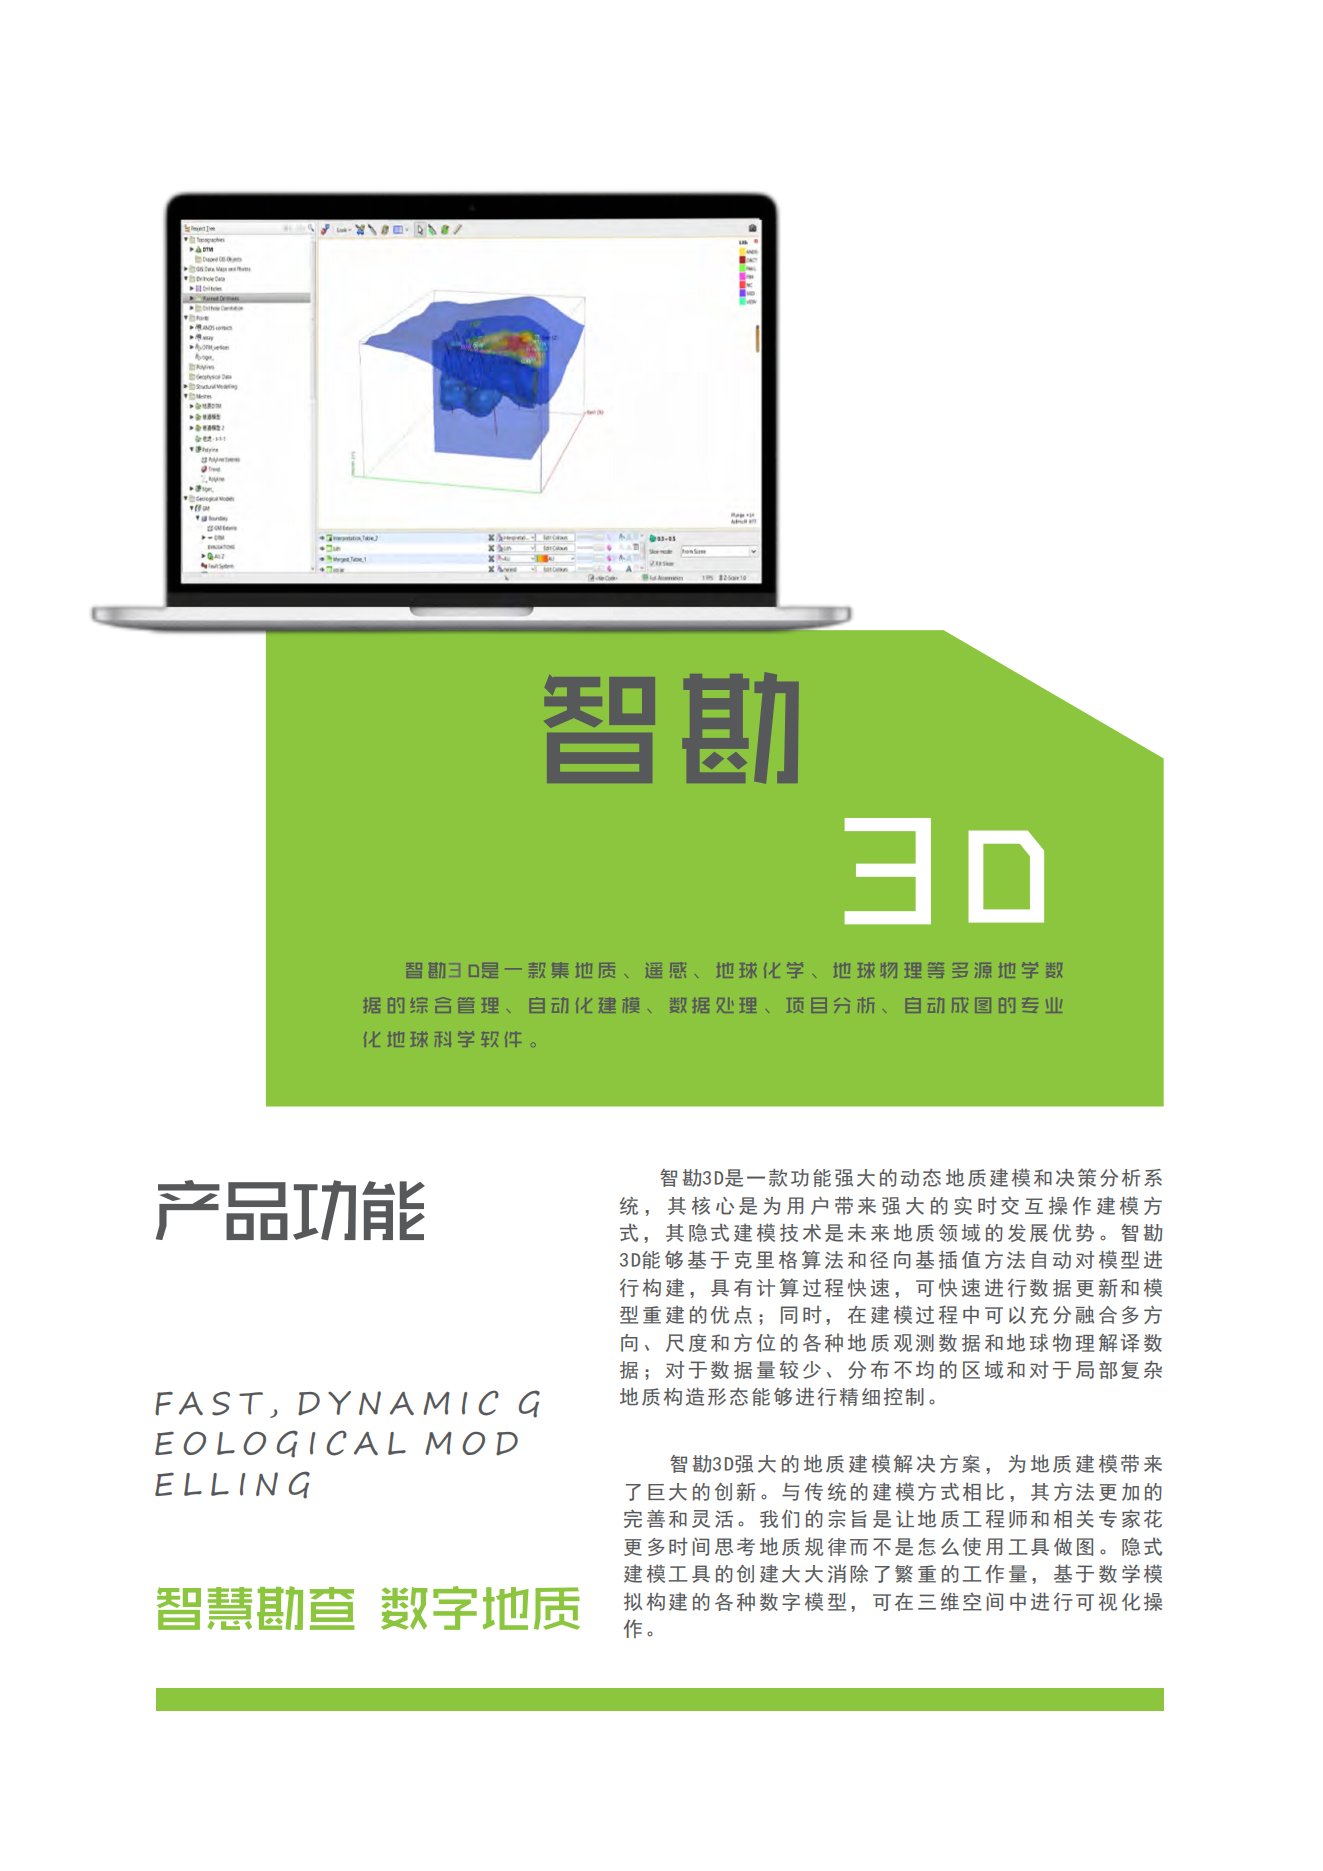 智勘3D软件简介(1)_03